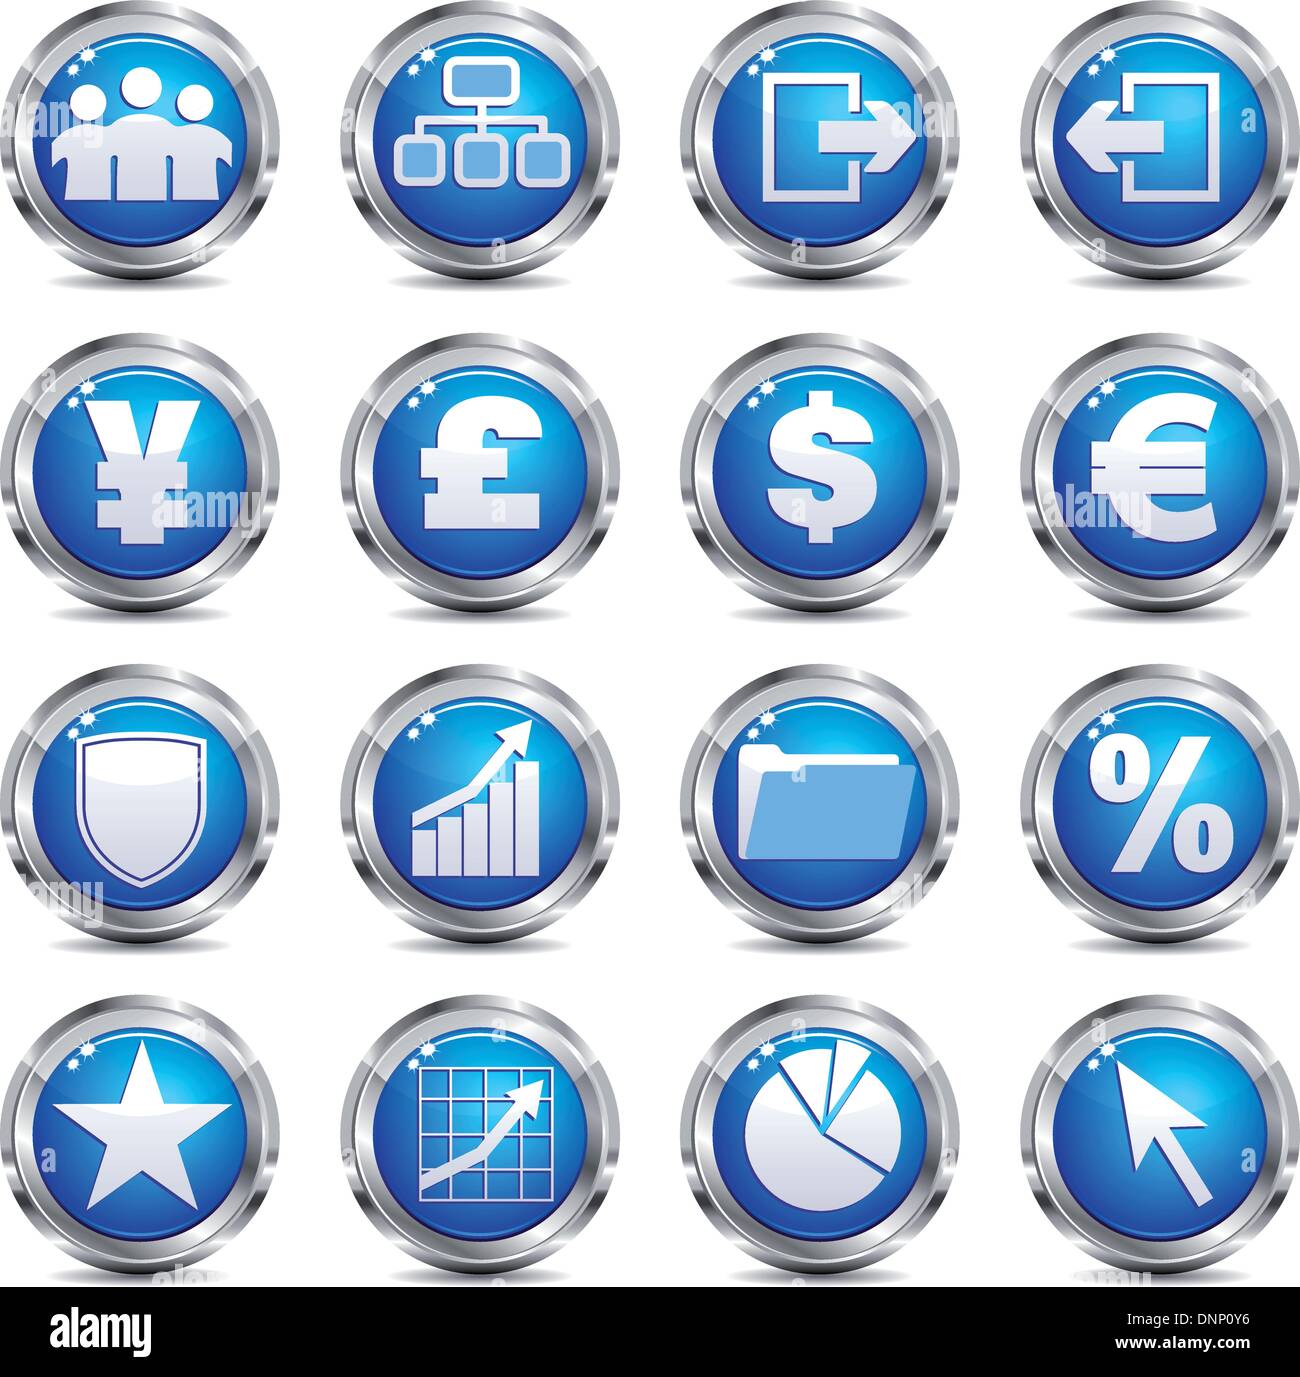 Eine Reihe von sechzehn blauen und silbernen Internet icons Stock Vektor